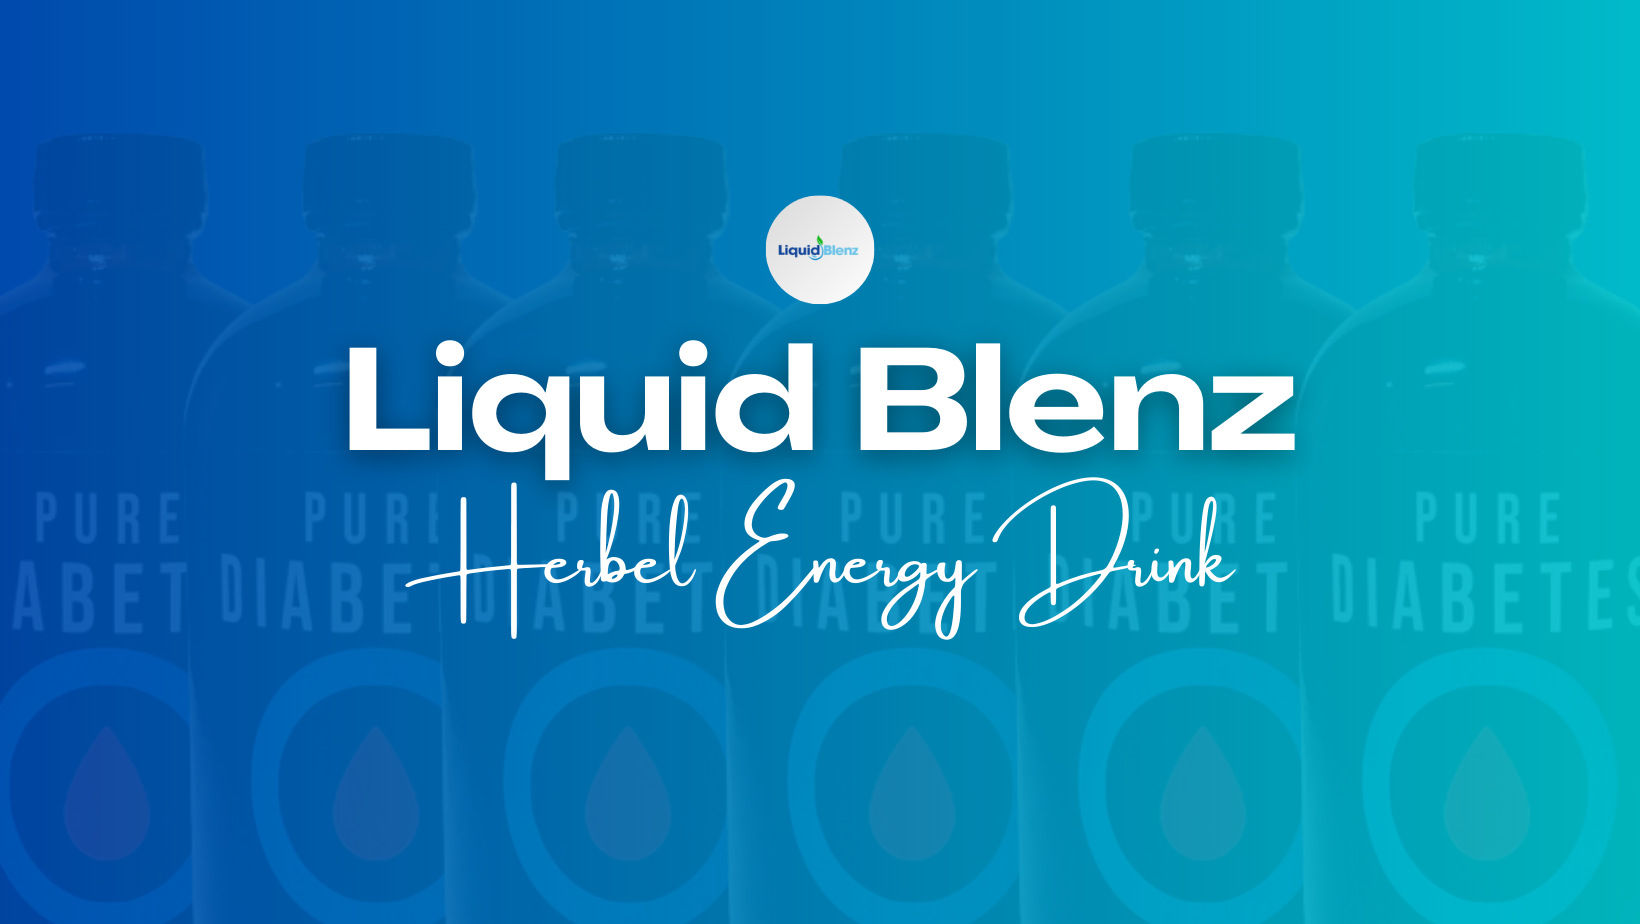 Liquid Blenz